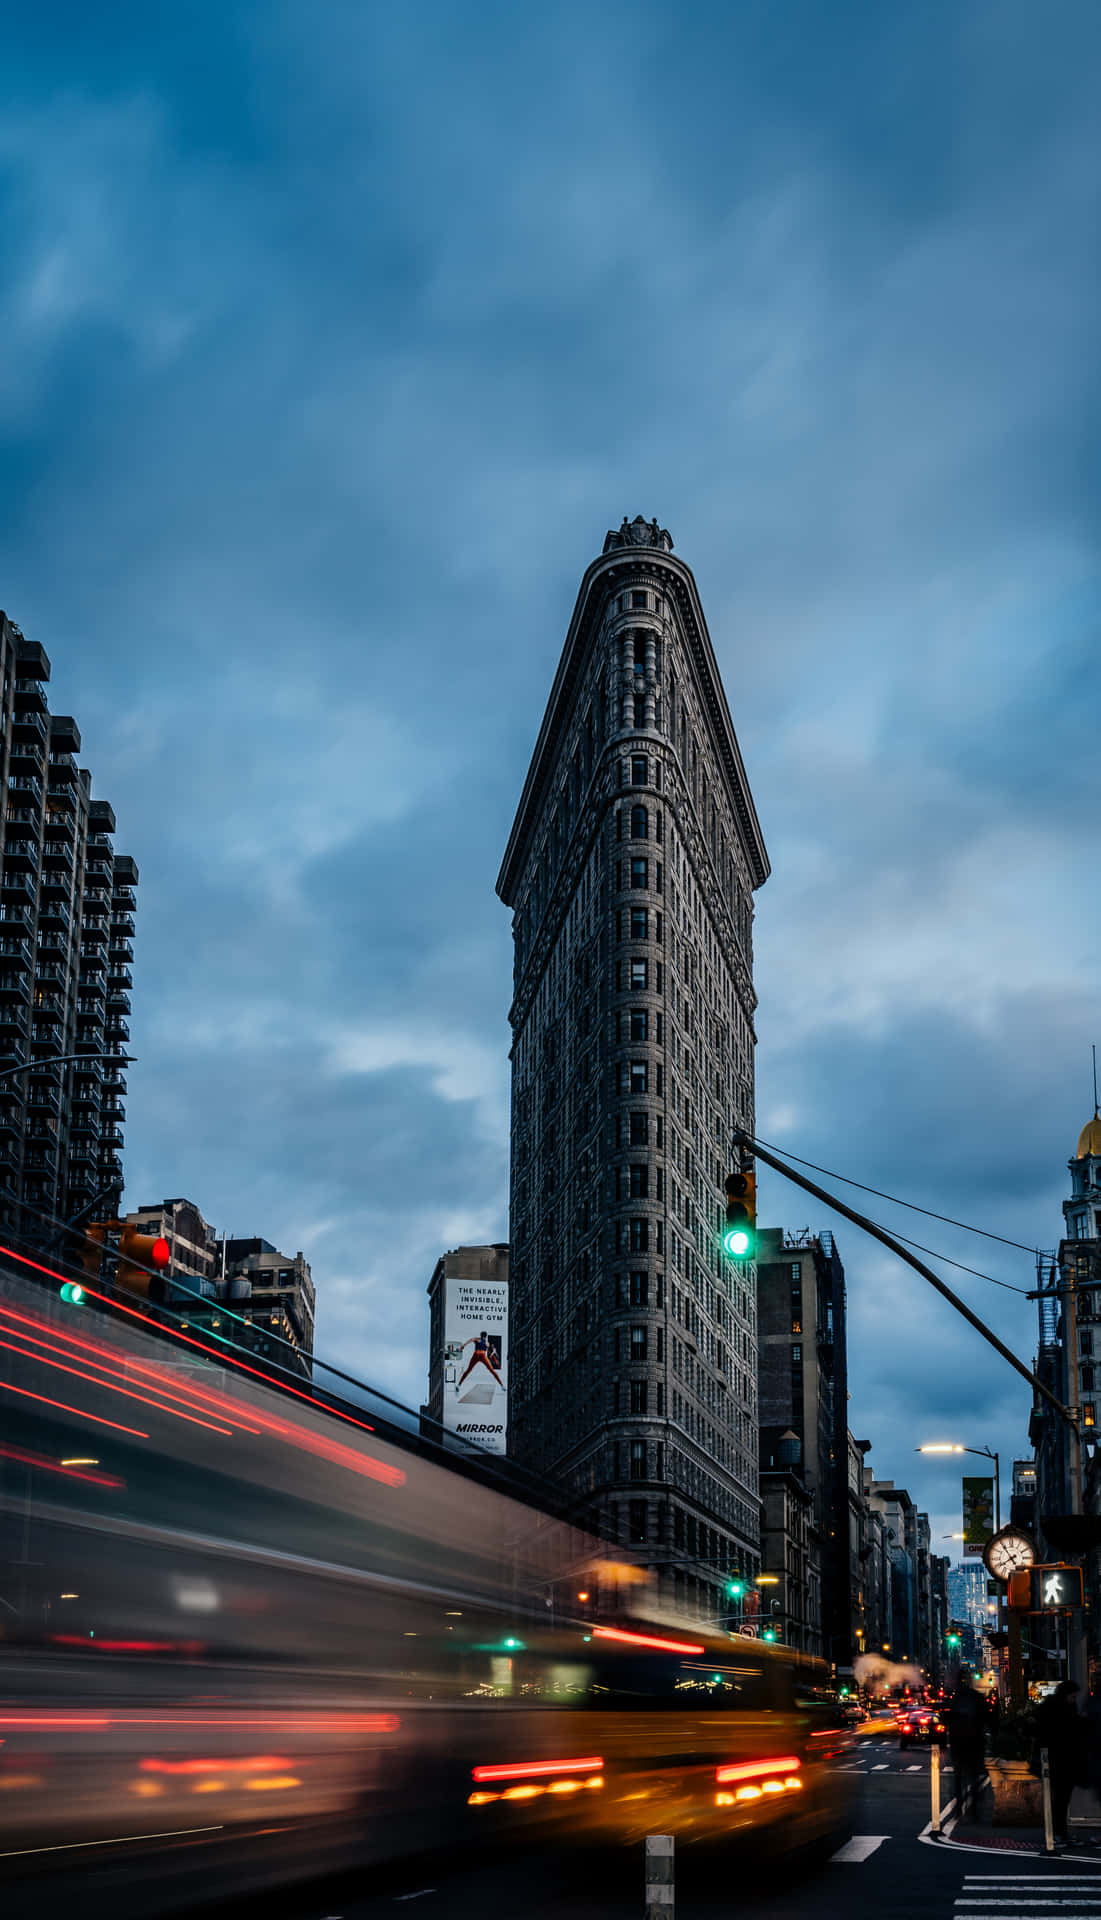 Unosplendido Panorama Aereo Della Città Di New York, Immortalato Da Uno Smartphone Android.